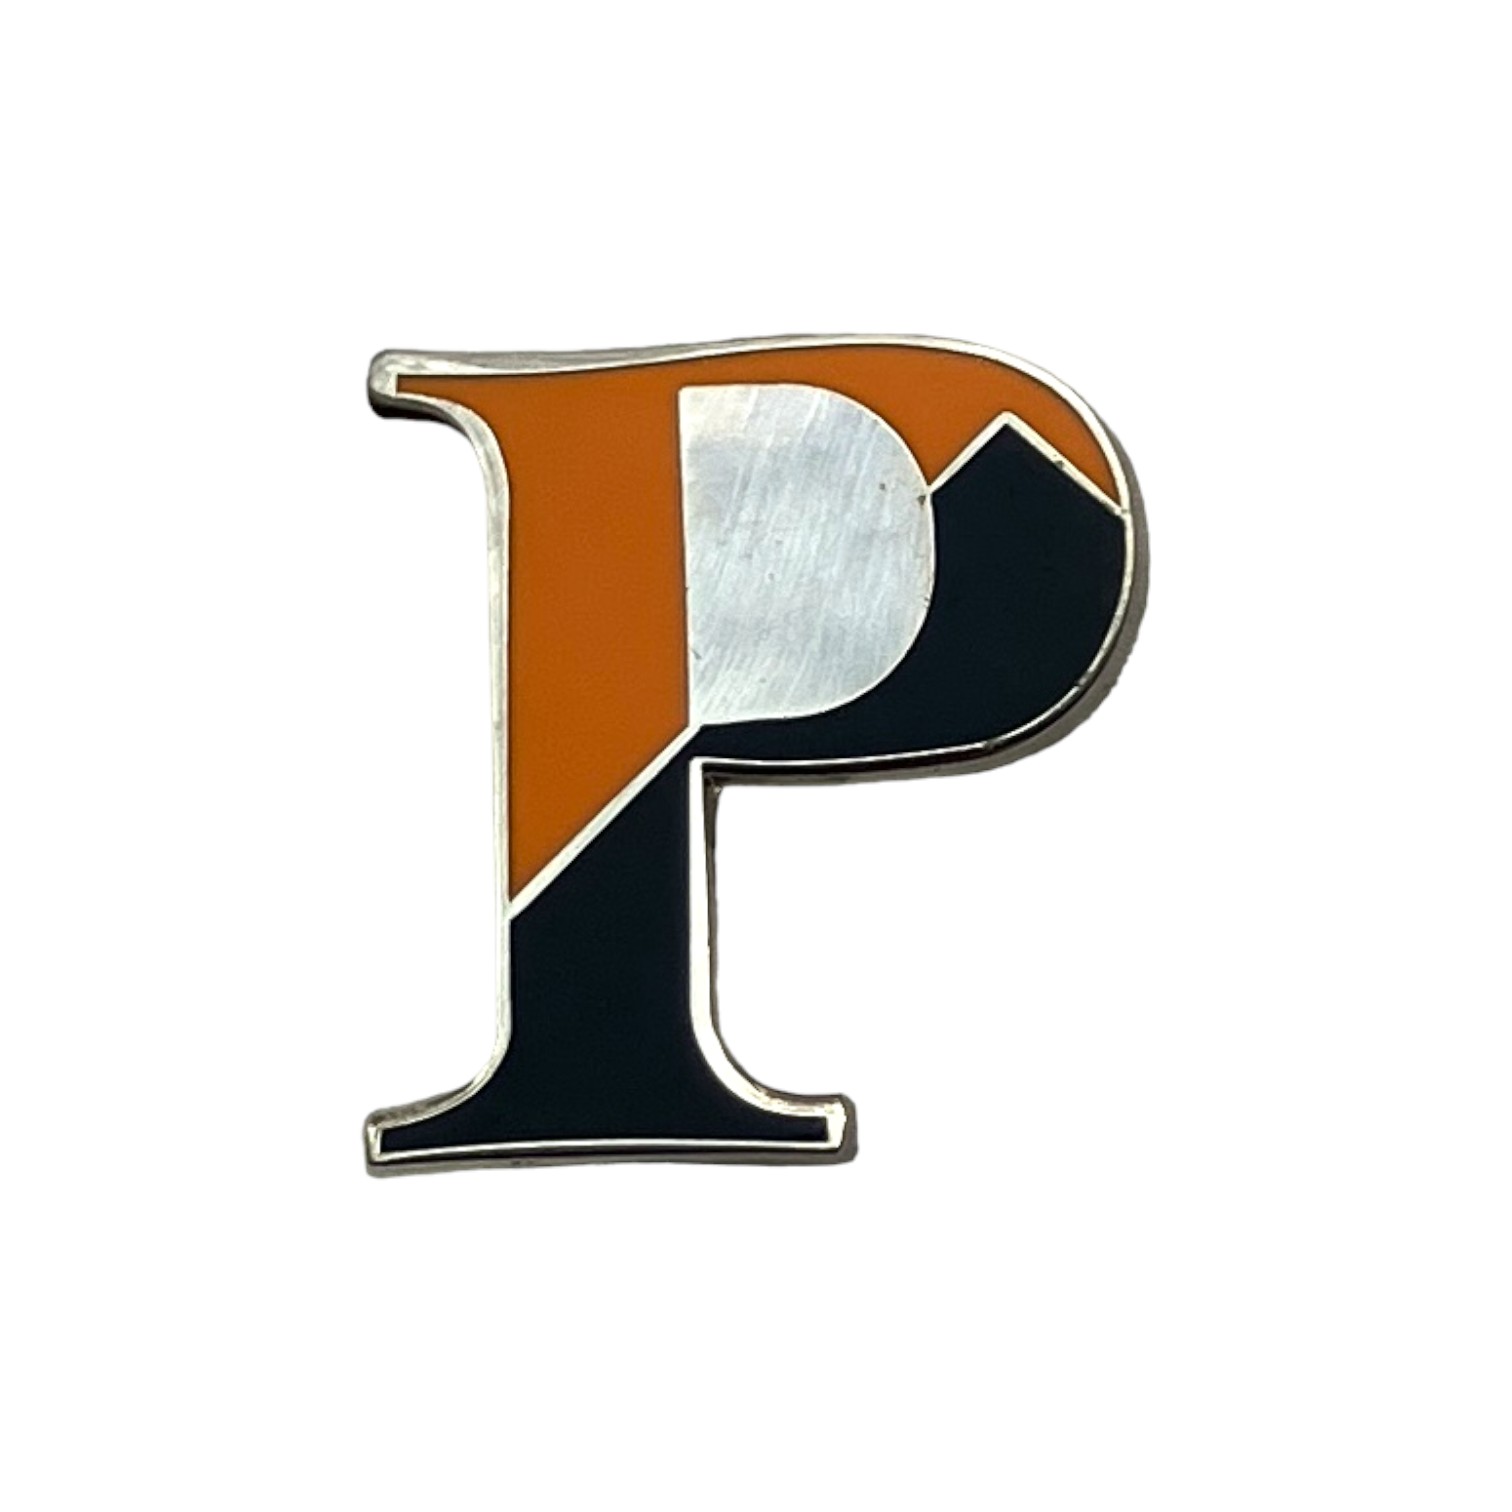 General Princeton Pin